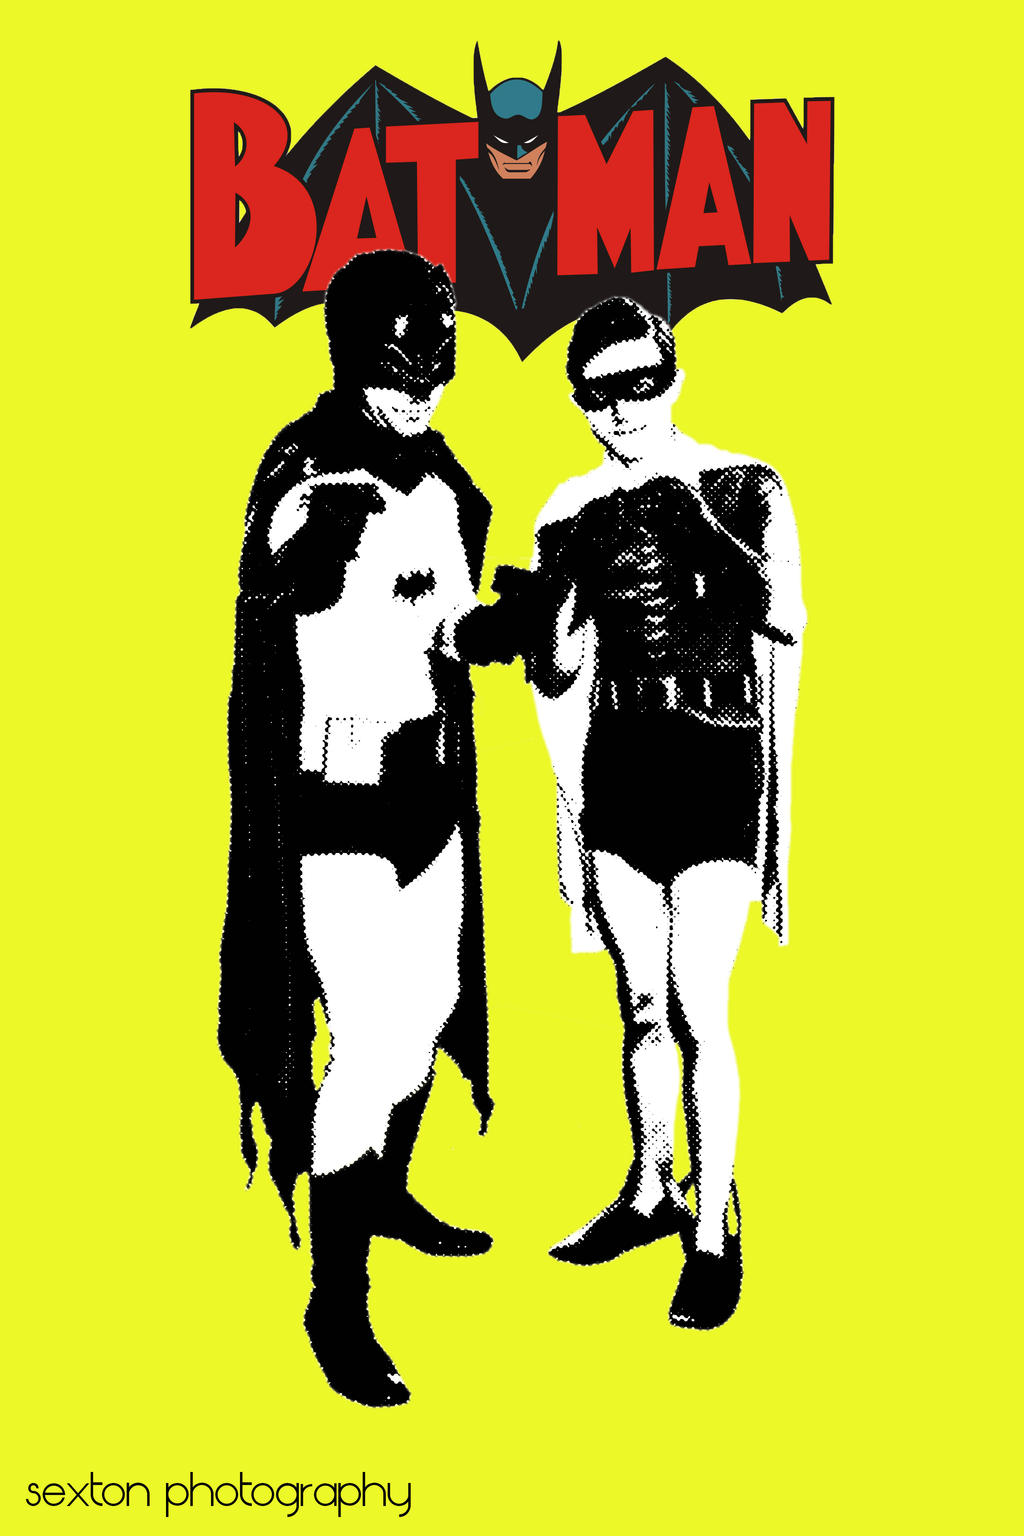 Batman and Robin Pop Art poster by Squeaker4 on DeviantArt